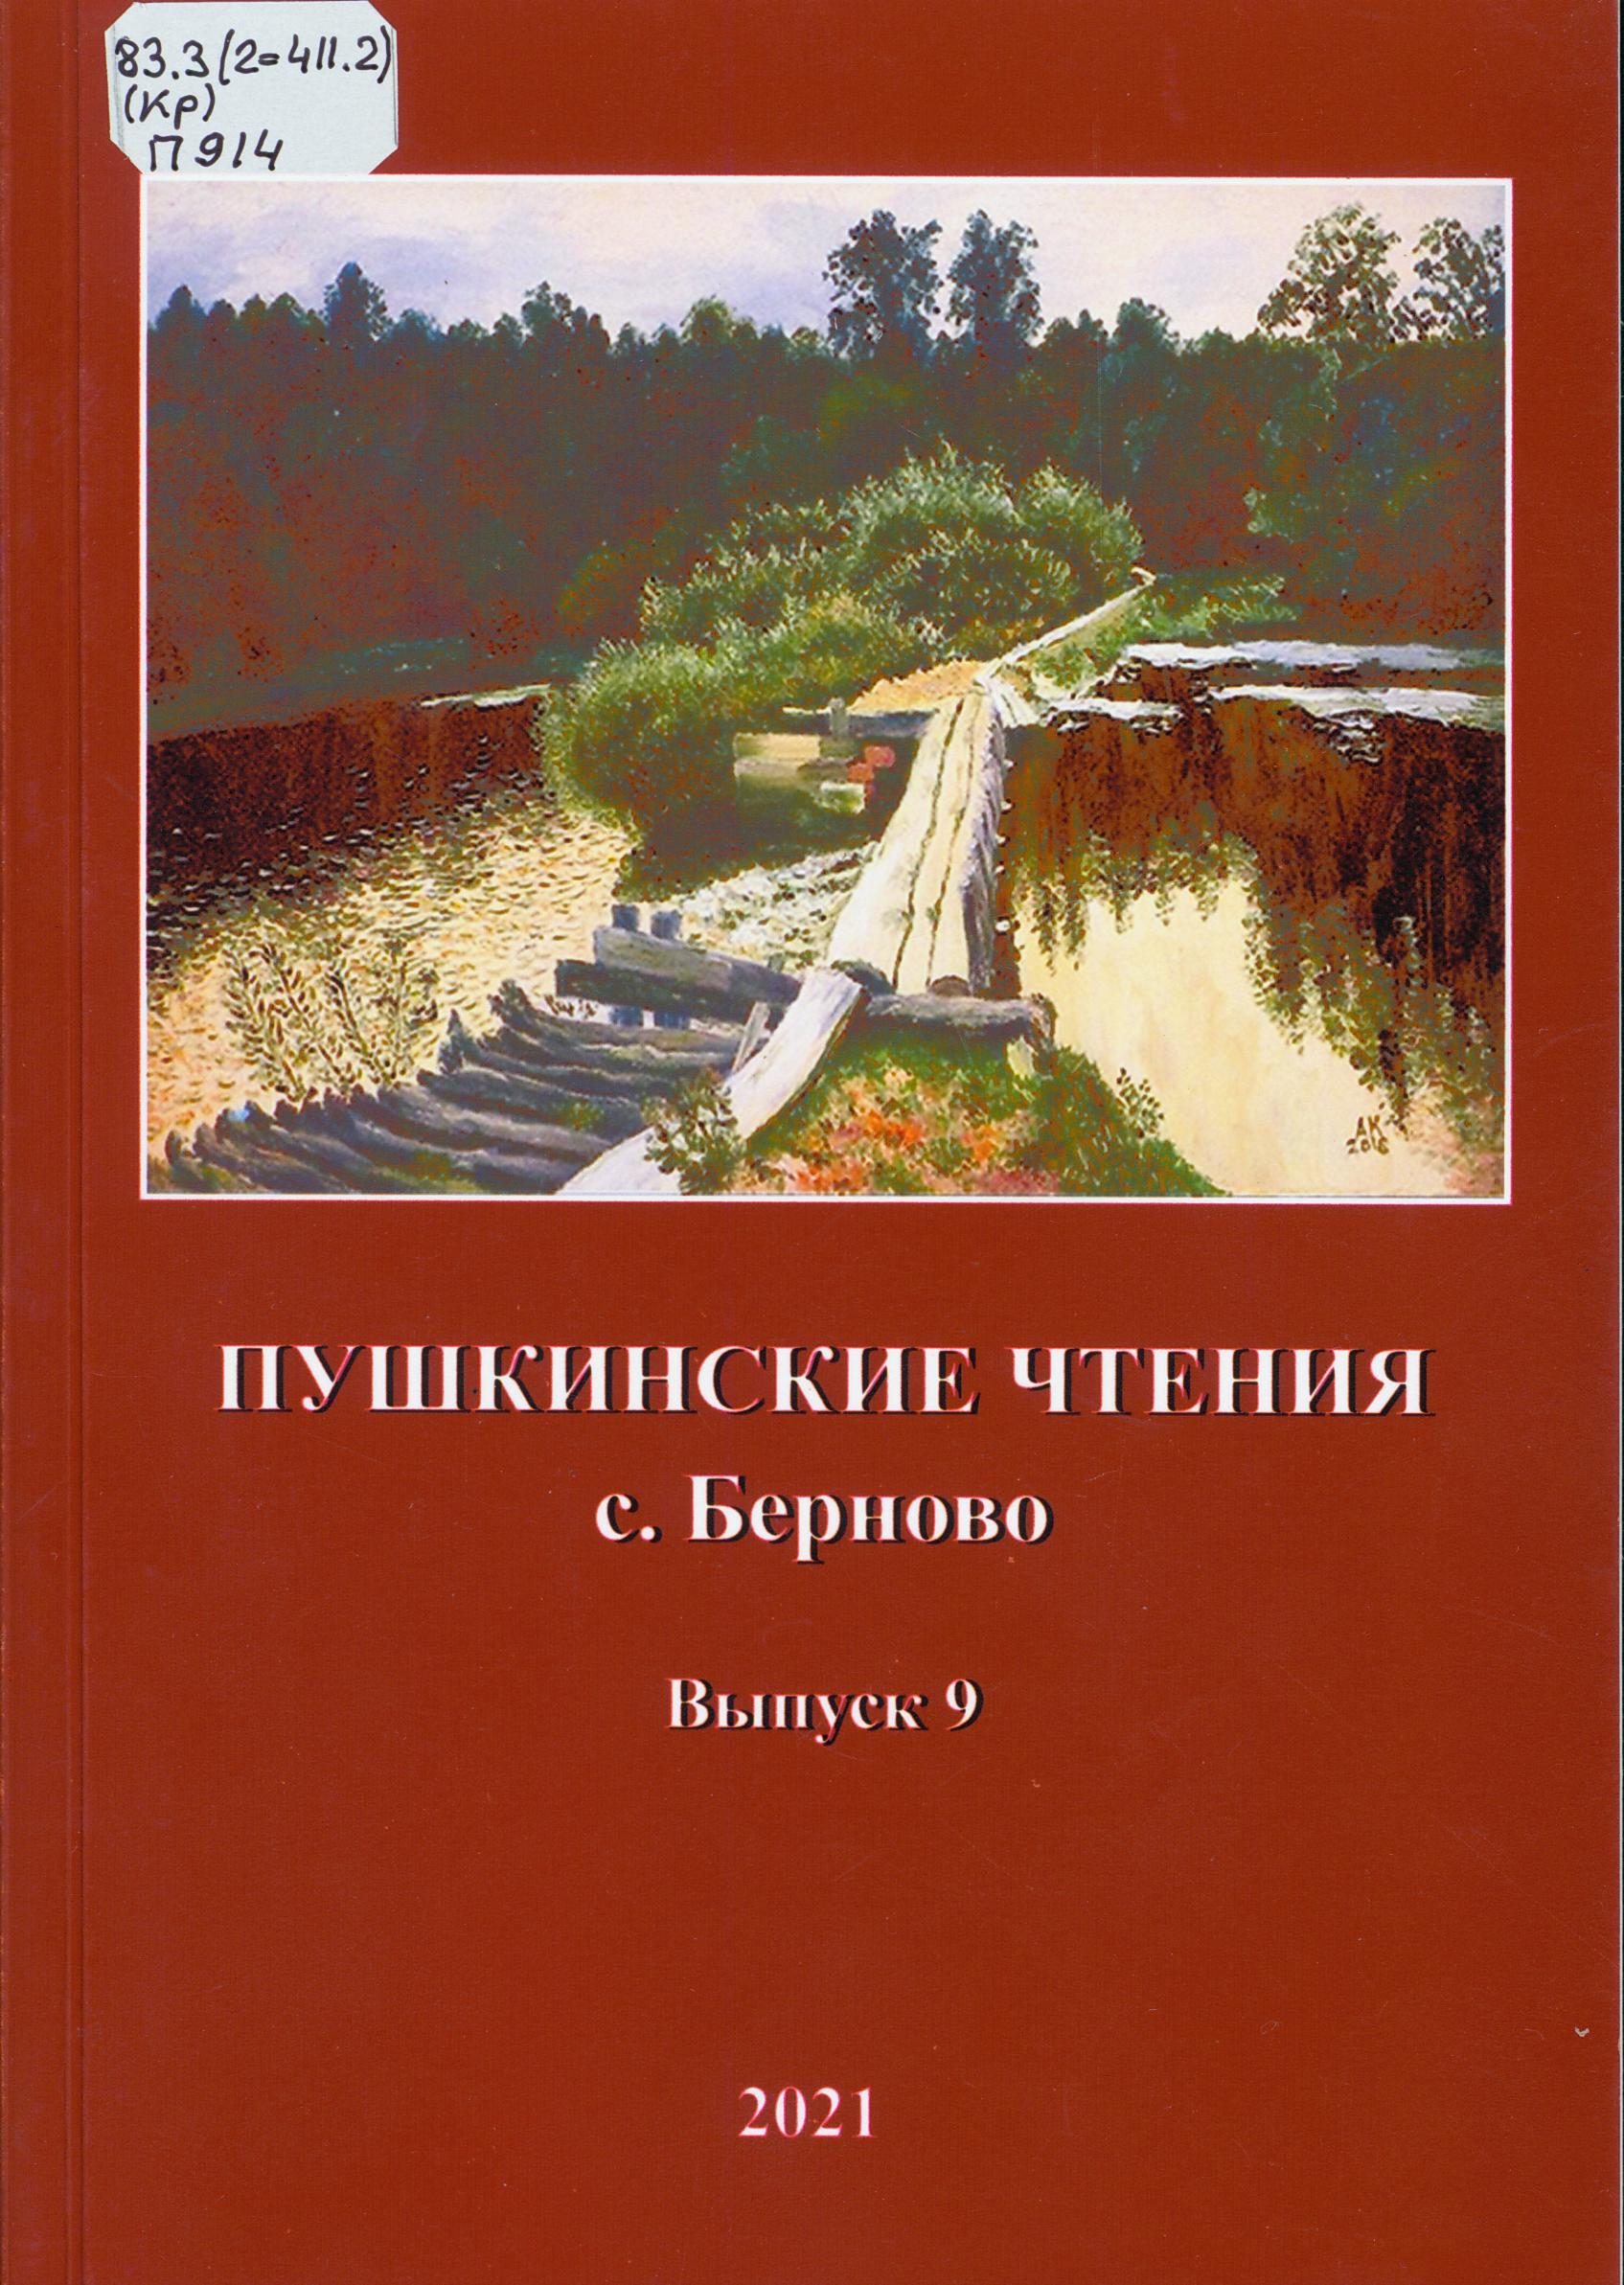 Пушкинские чтения с. Берново